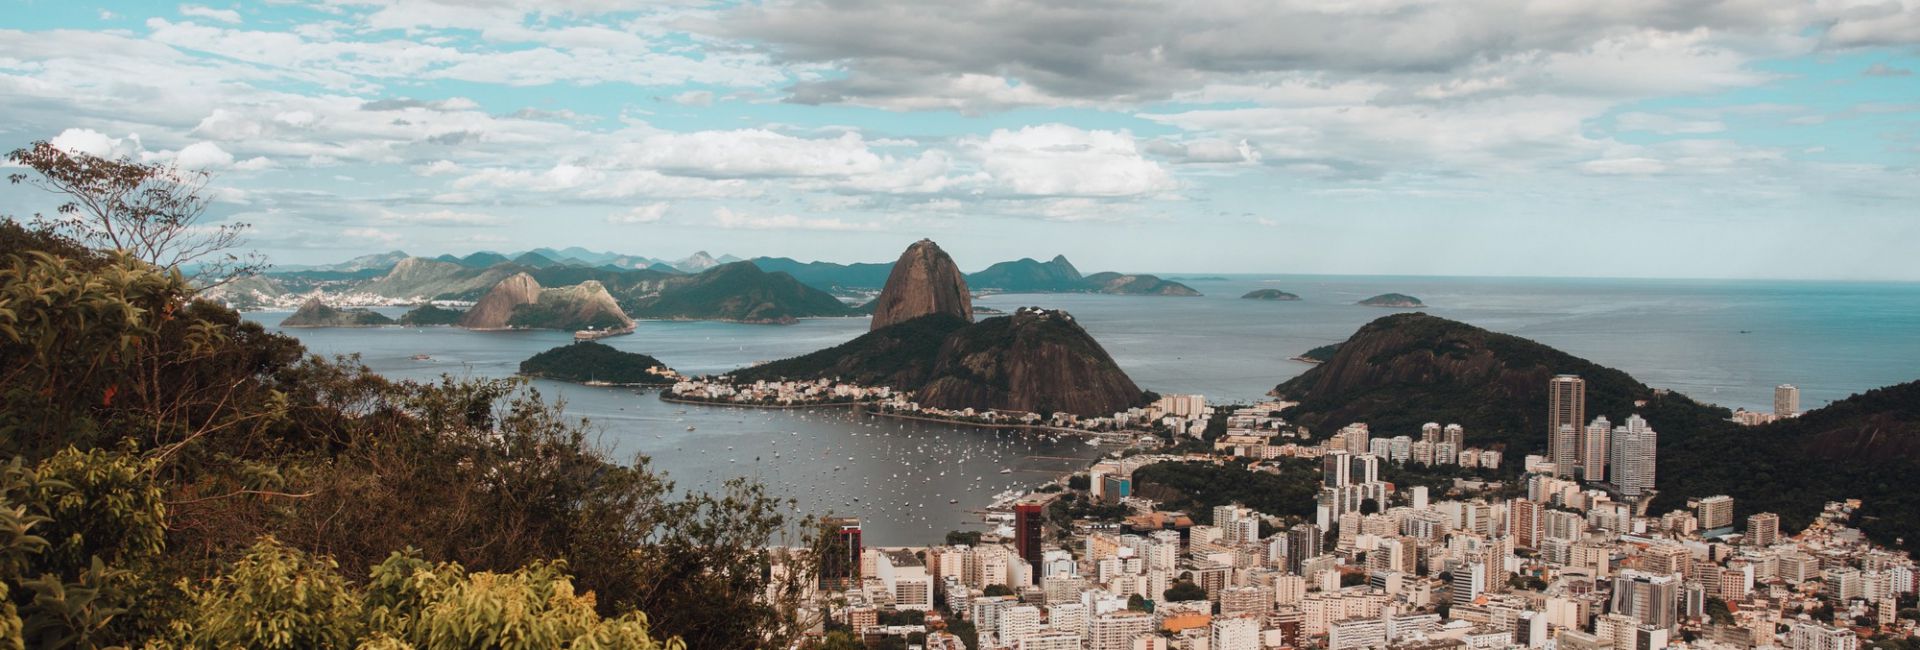 Tratamento contra o Crack no Rio de Janeiro